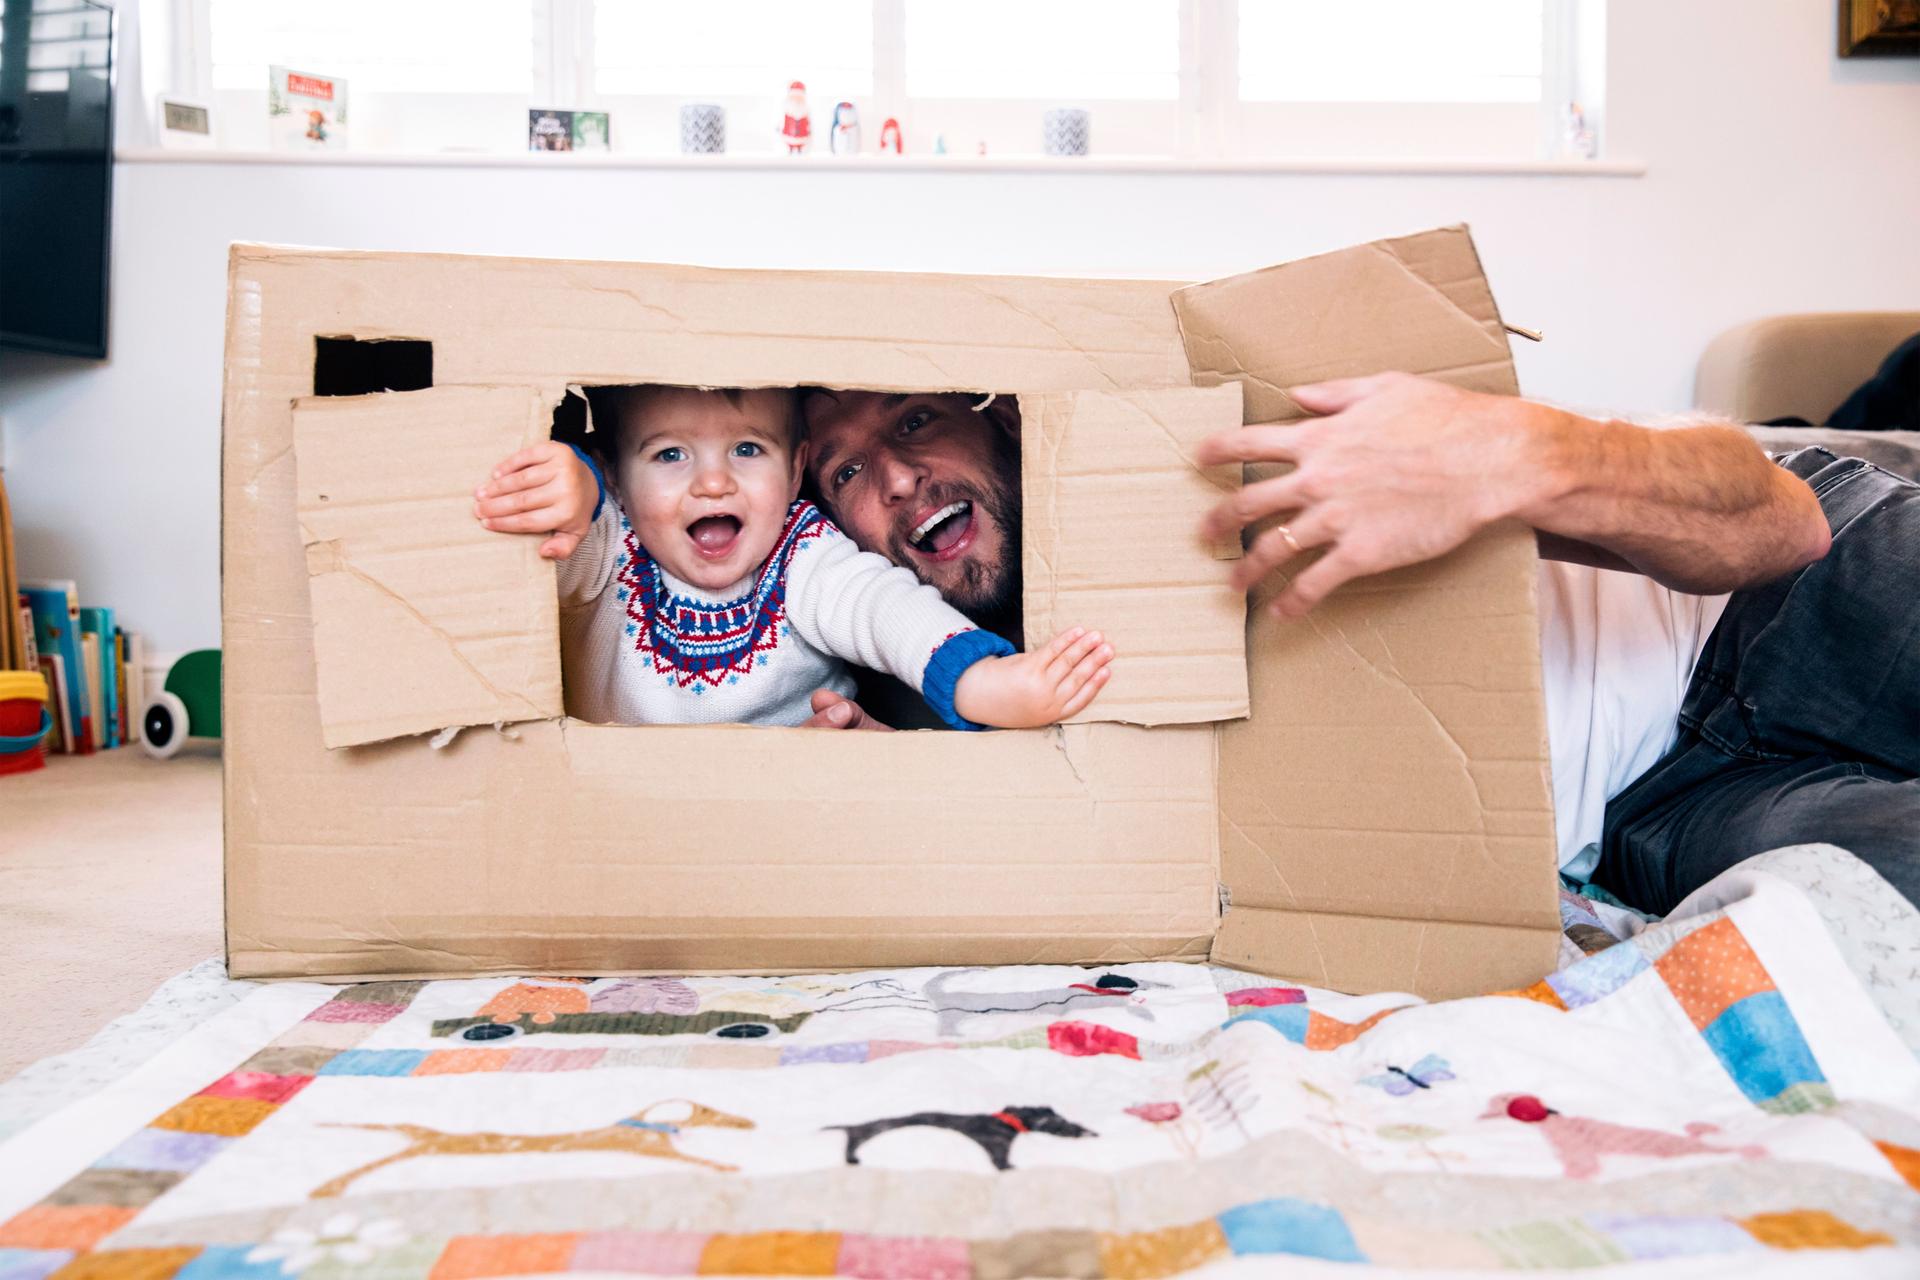 Vater und Kind spielen mit einem Karton als Haus im Kinderzimmer.